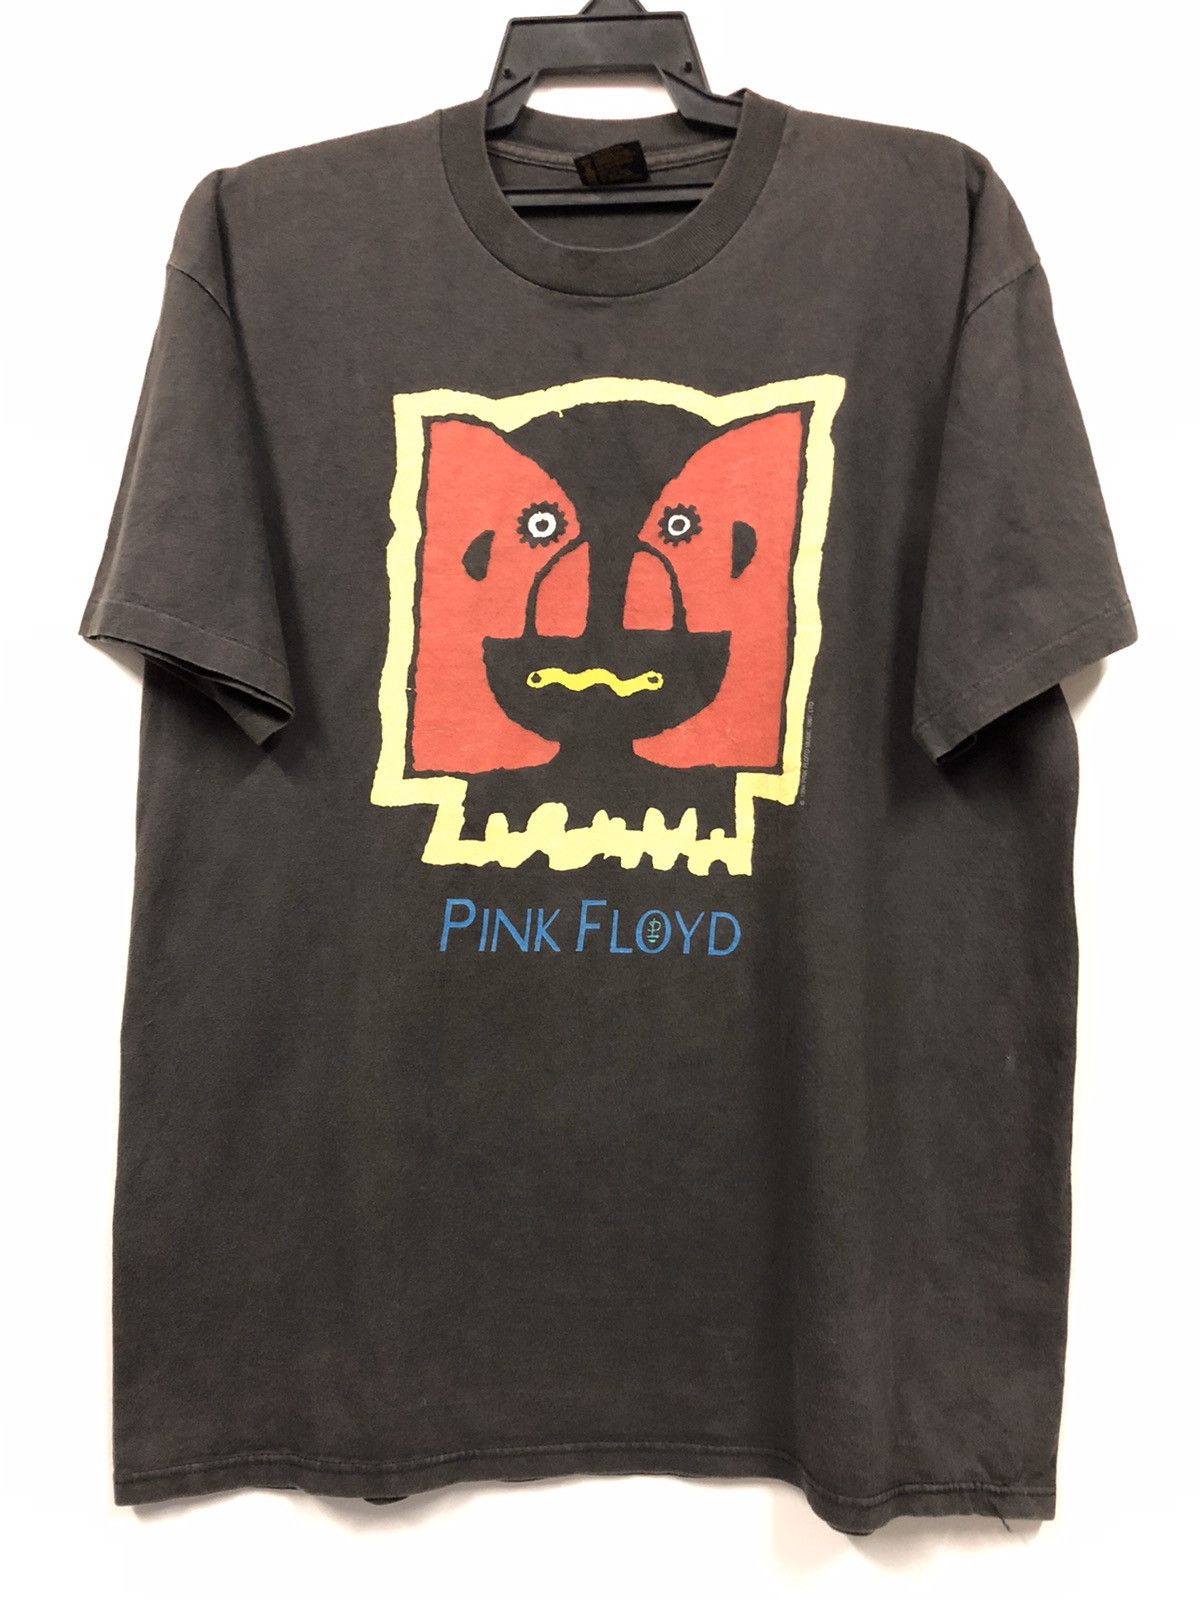 Vintage Vintage 1994 Rare Pink Floyd world Tour t shirt 90s Size US XL / EU 56 / 4 - 1 Preview